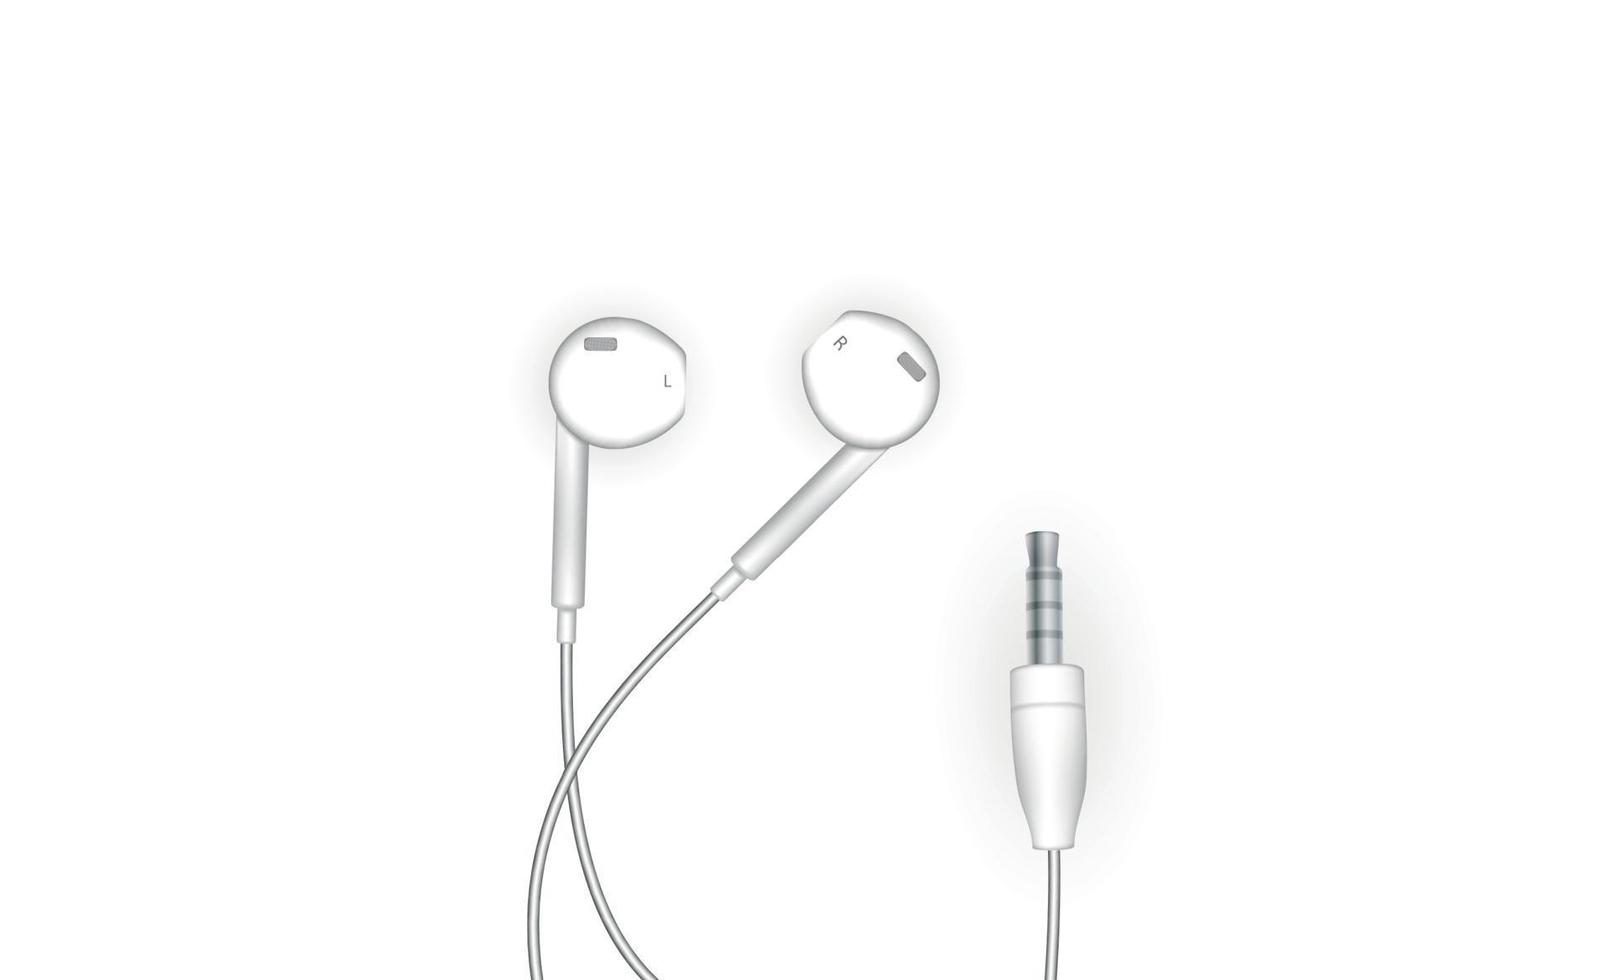 schicke, stylische, kabelgebundene Ohrhörer in Weiß. Vektor-Illustration vektor